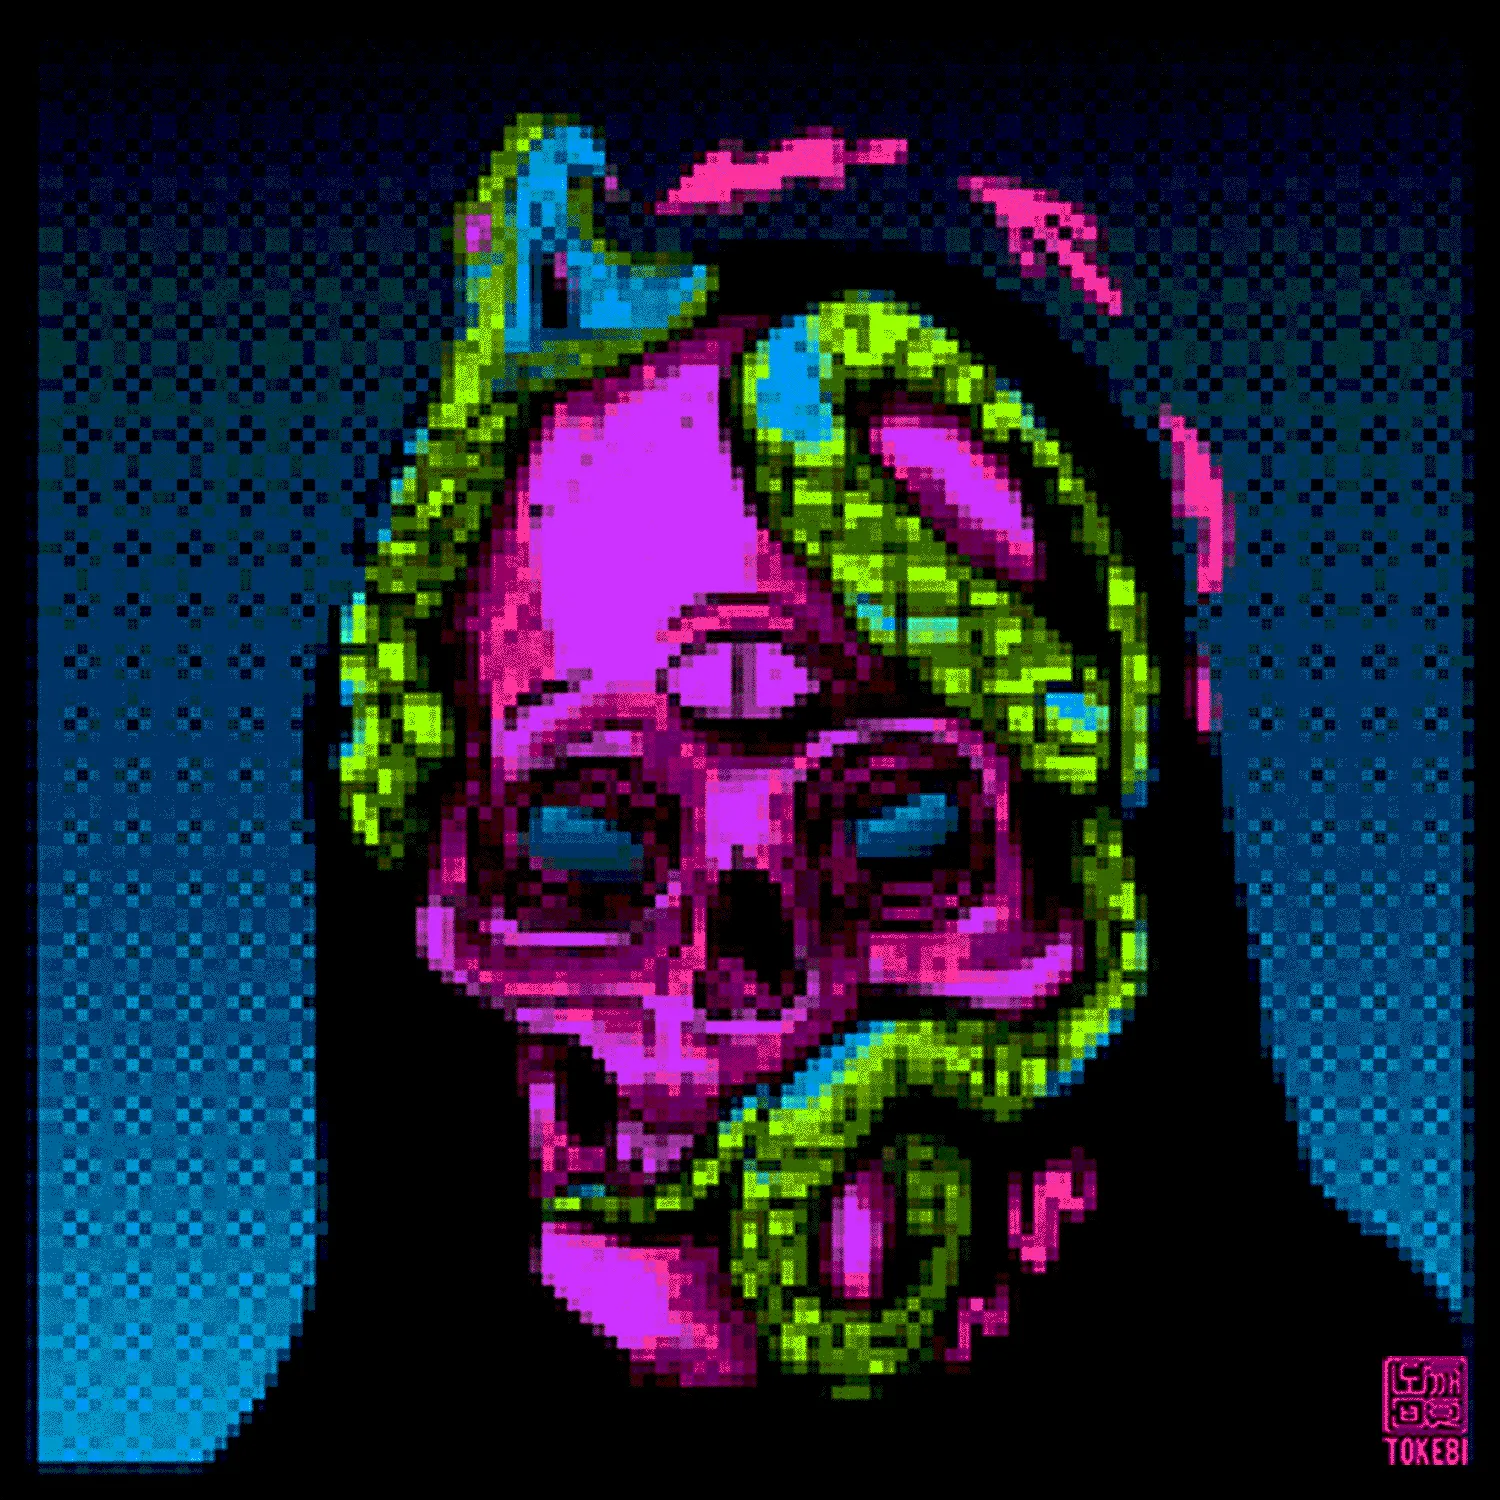 Tokebi Skulls #016 - Señor Culebra Pixel Version